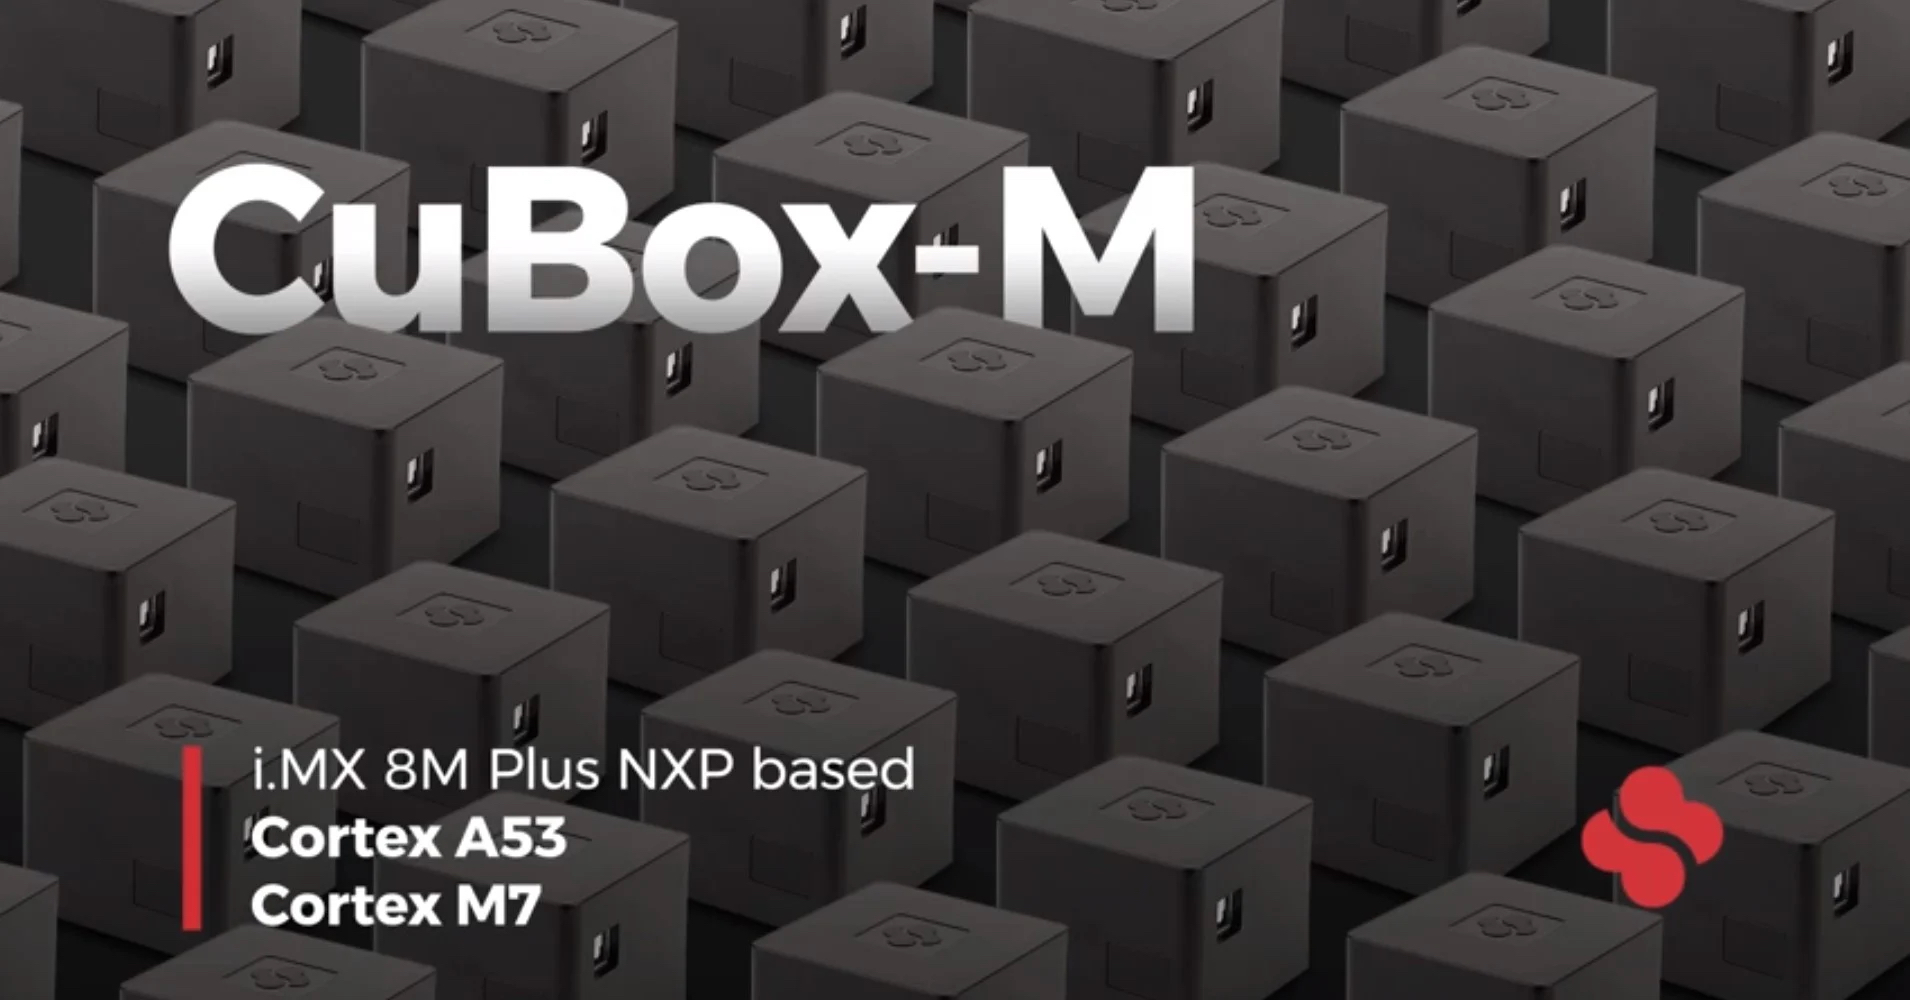 人気のCuBoxシリーズに最新i.MX 8M Plus 4コア搭載のCuBox-Mを発表